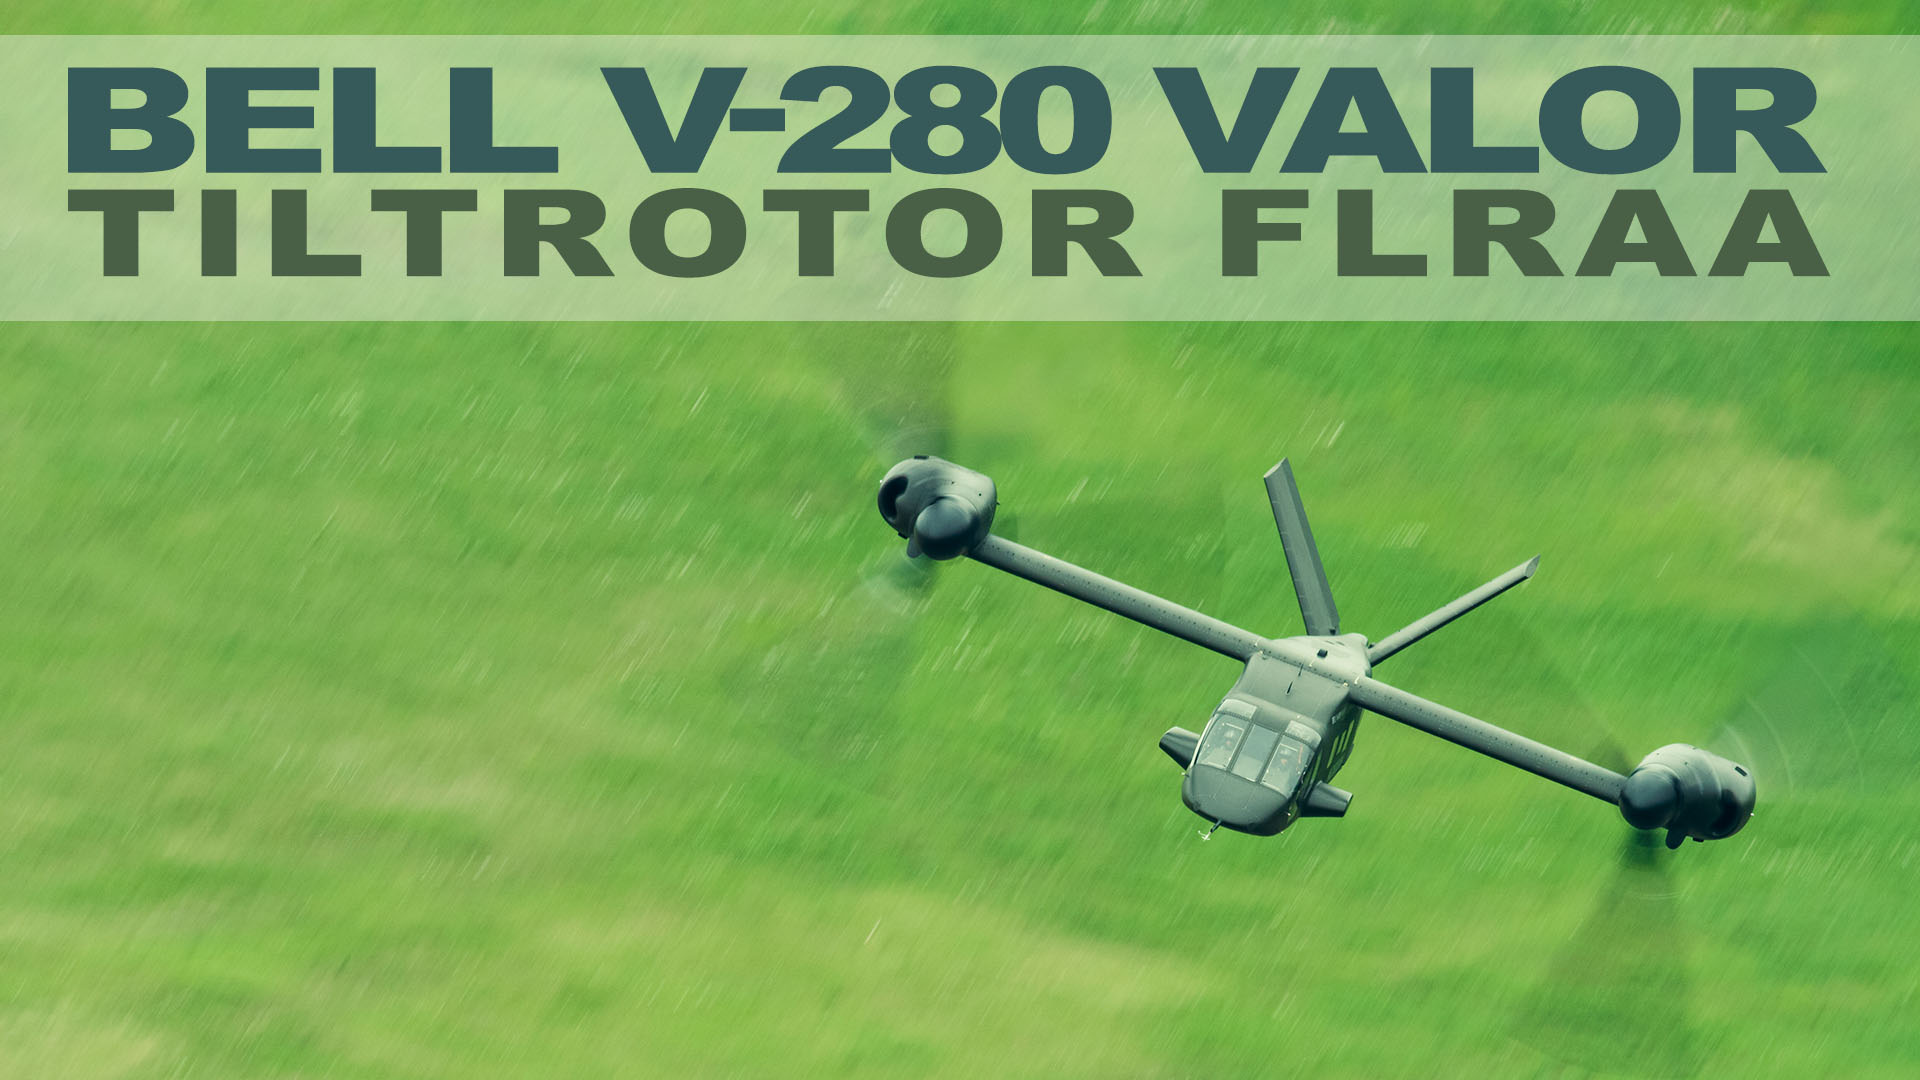 Bell V-280 Valor Tiltrotor FLRAA